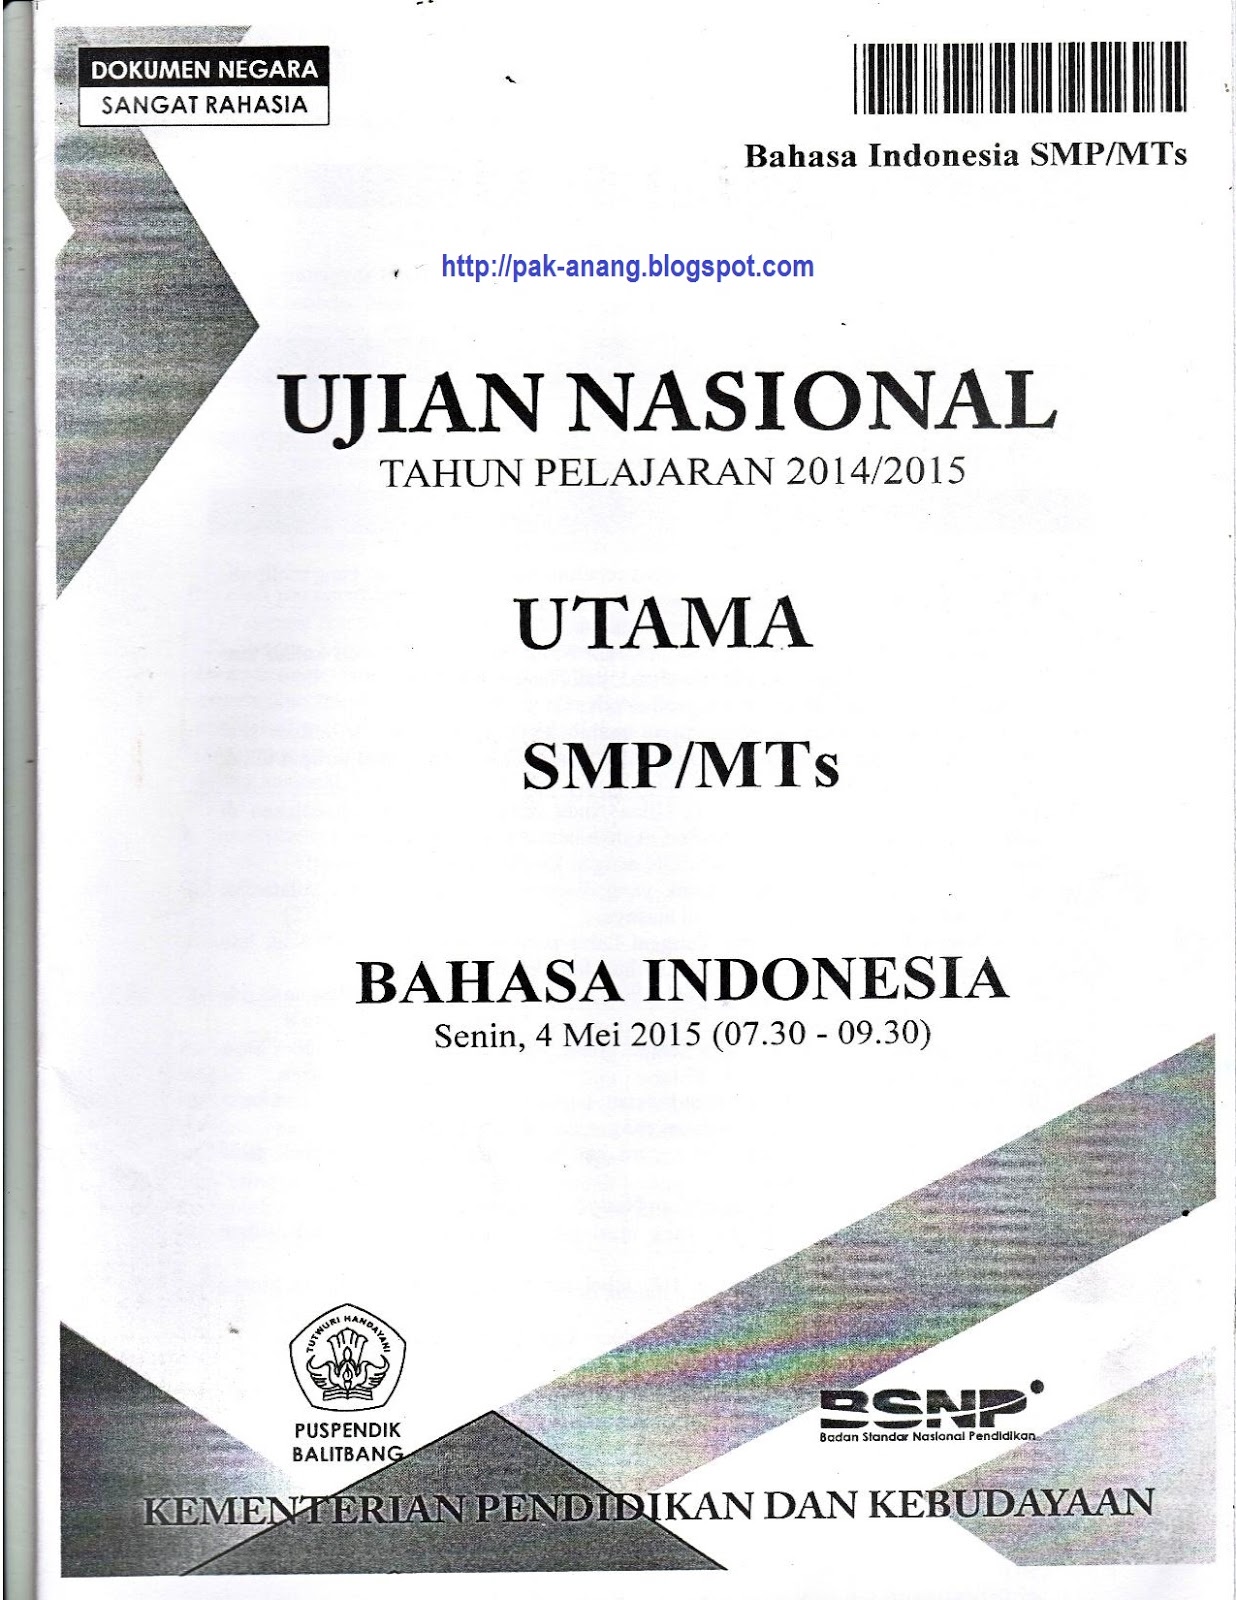 Salah satunya adalah mencoba mengerjakan naskah soal asli UN Bahasa Indonesia SMP 2016 yang disusun oleh BSNP Kemdikbud